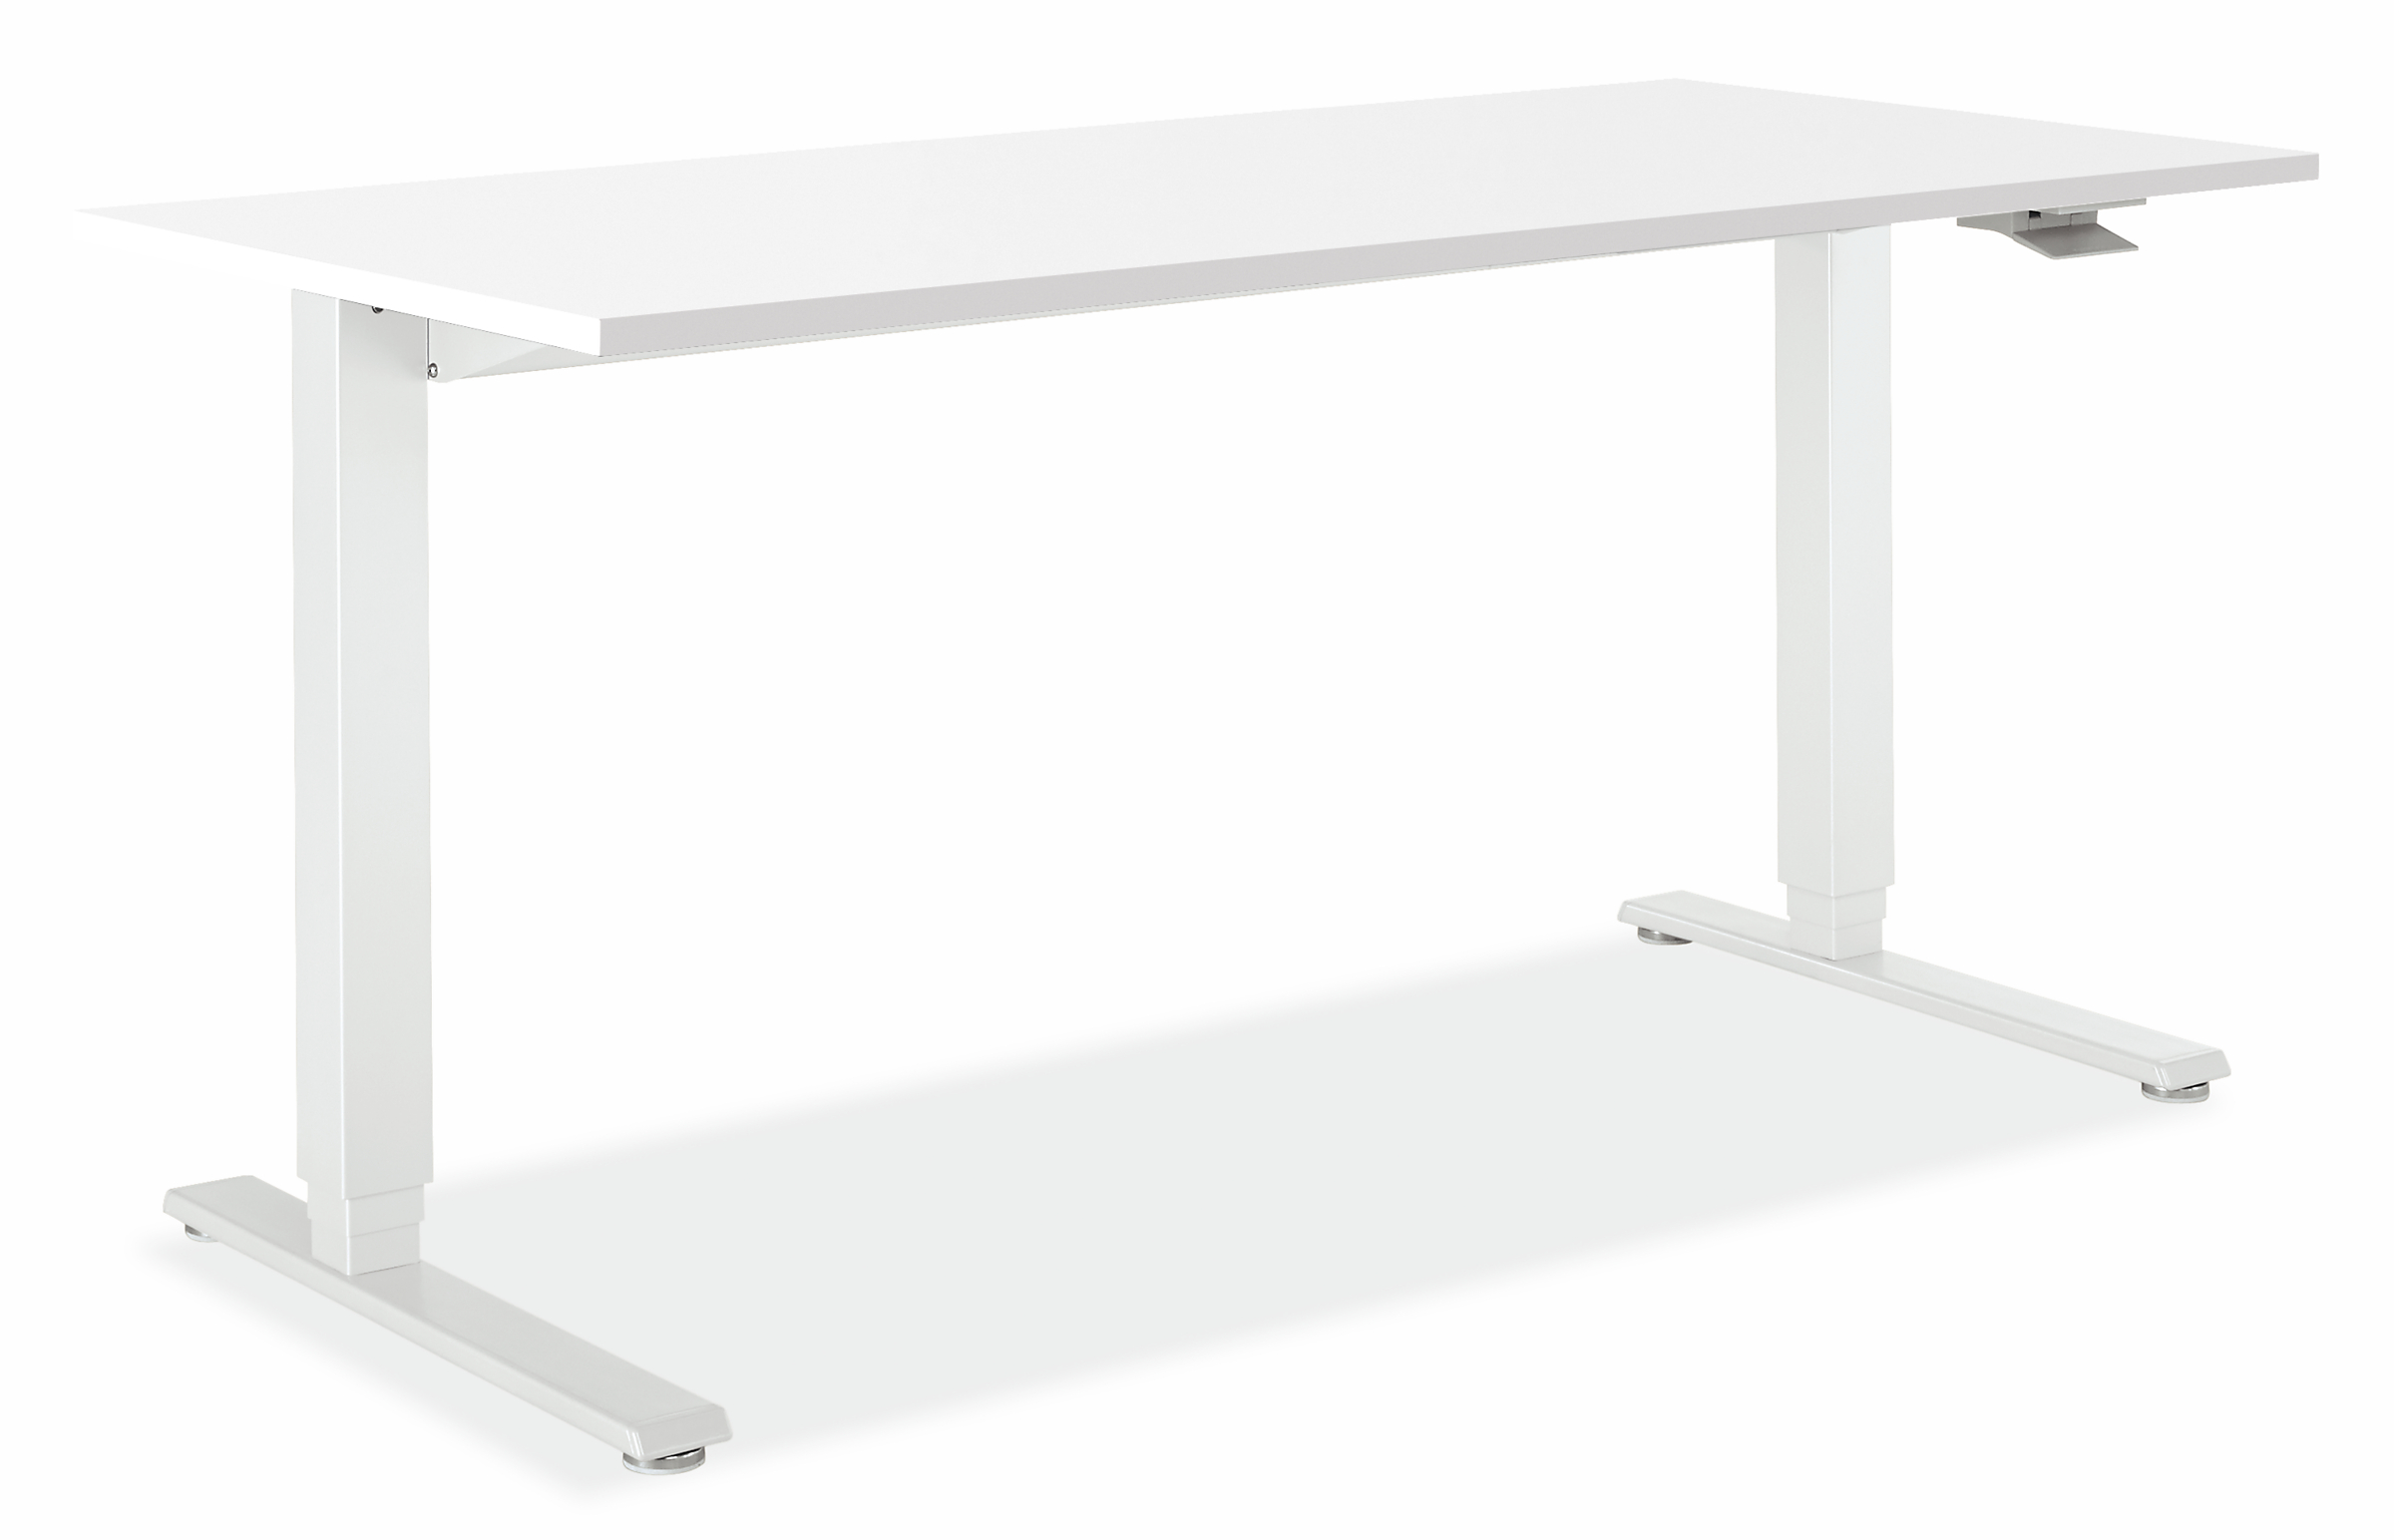 Float® 48w 30d 27-47h Adjustable Standing Desk